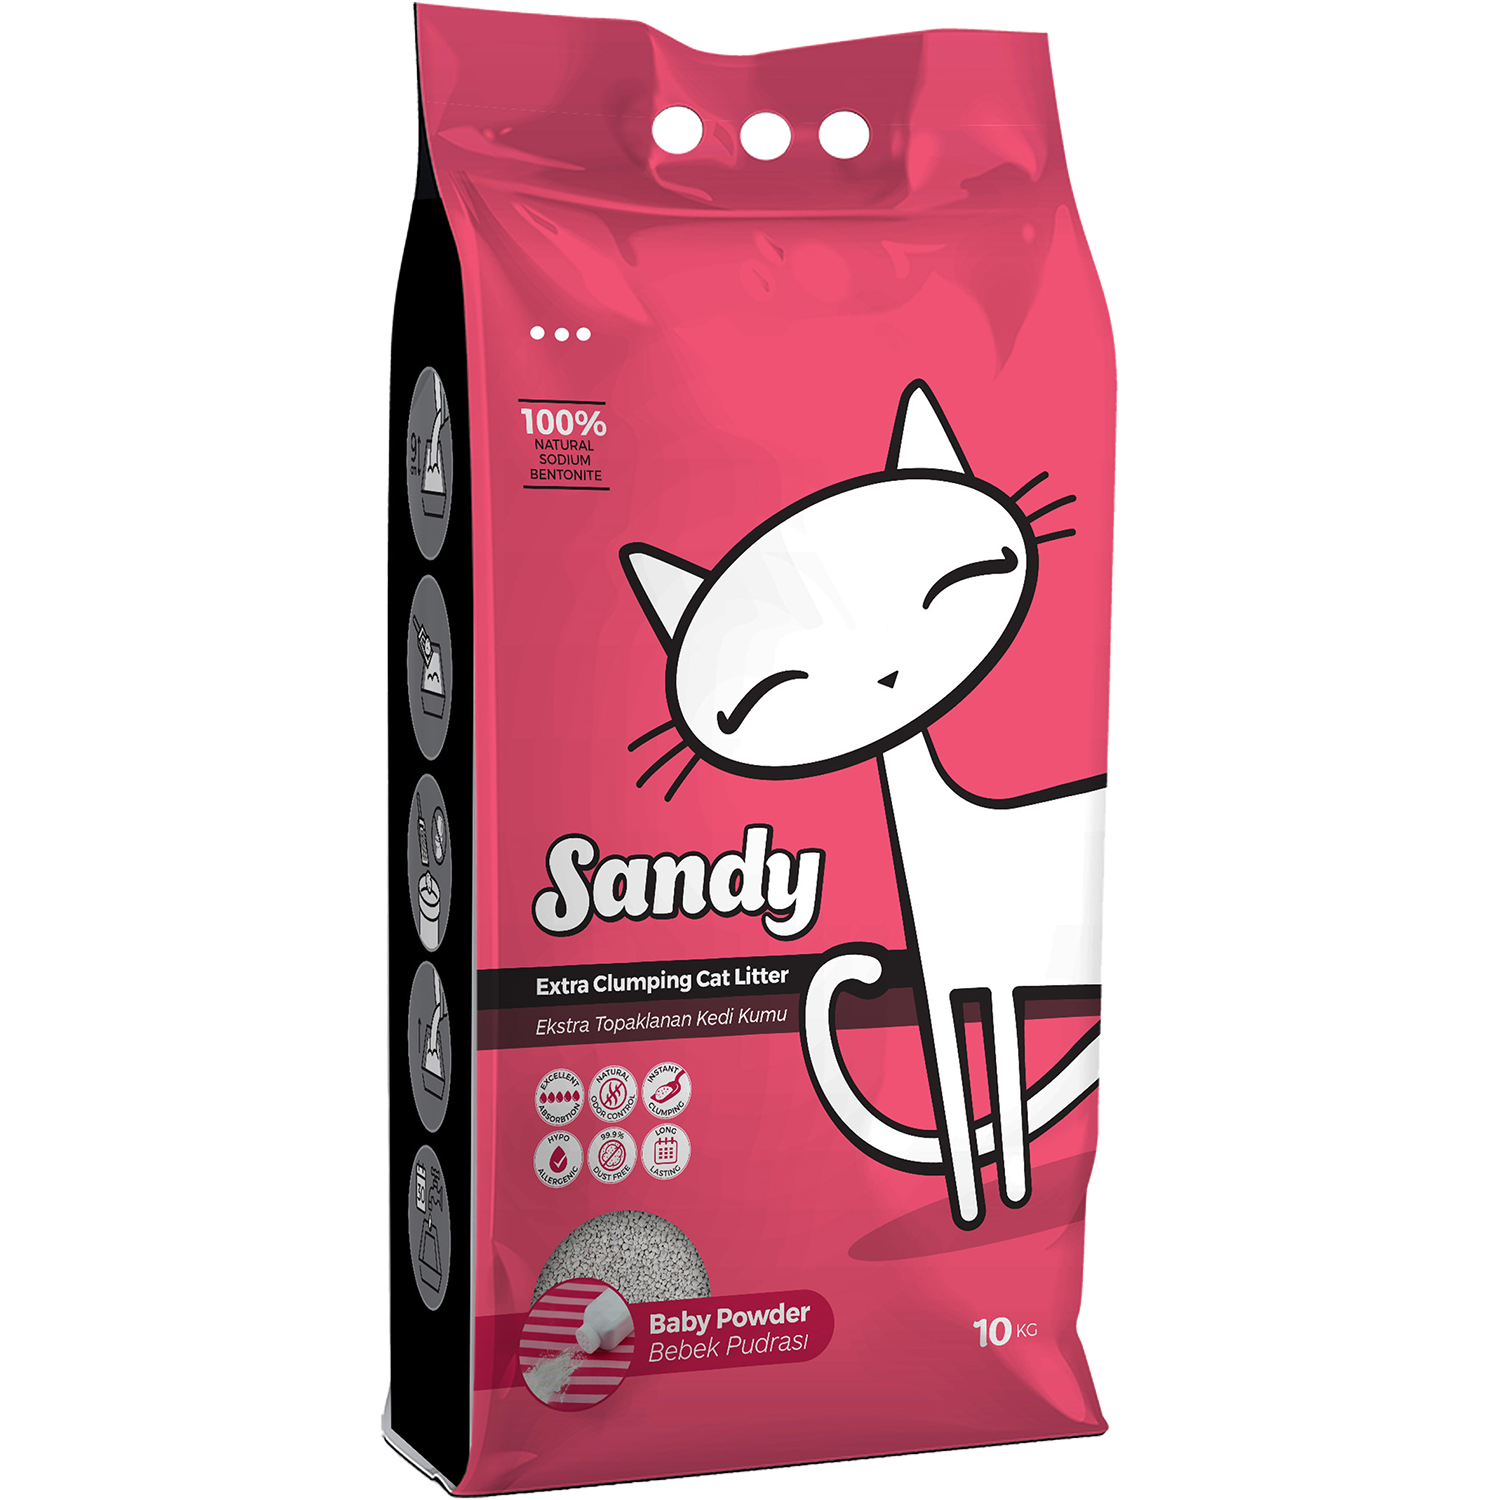 Наполнитель для кошек Sandy комкующийся с ароматом детской присыпки 10кг - фото 1